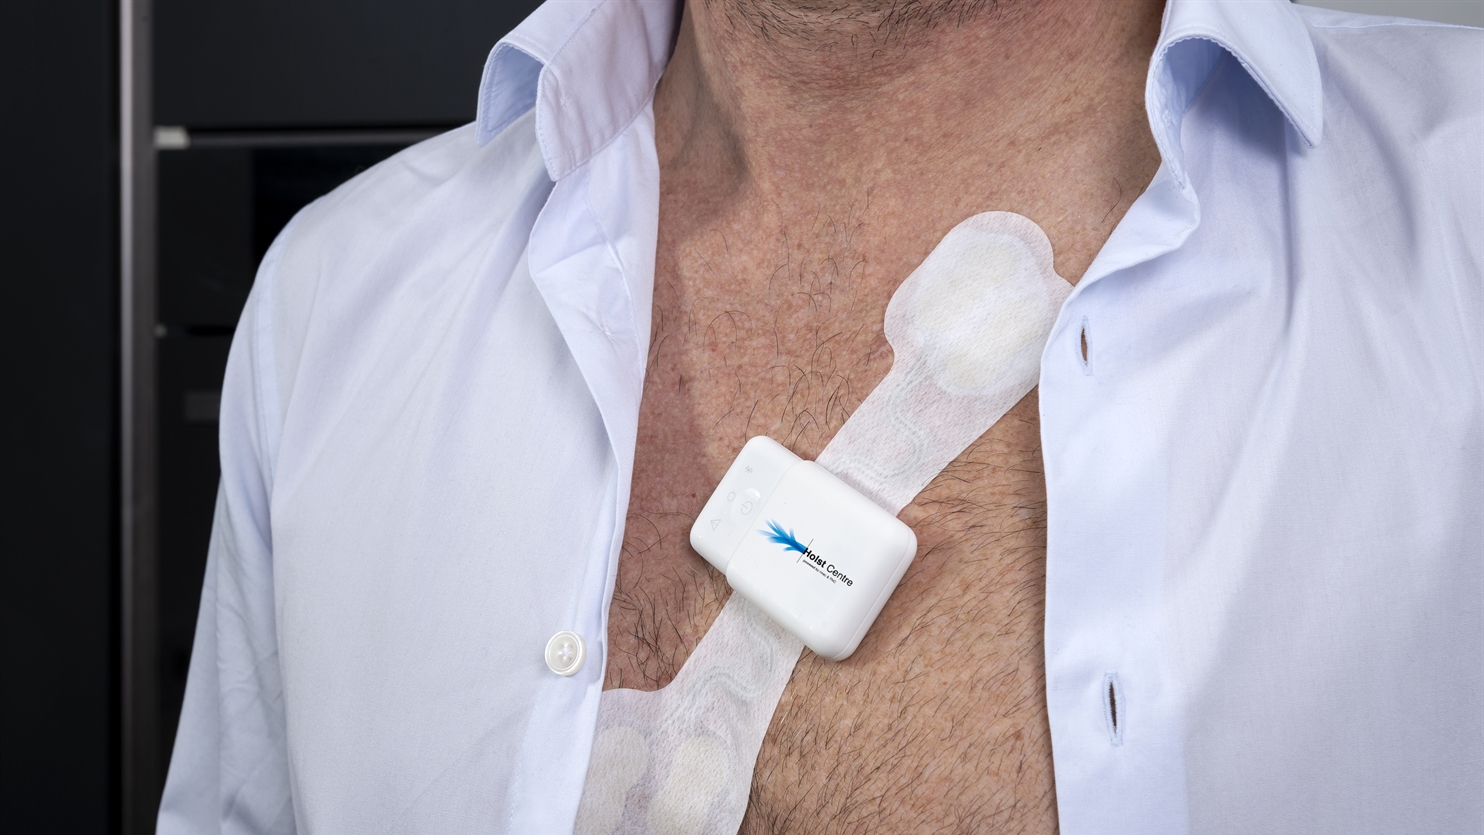 AIKON Health ontwikkelt een reeks draagbare biosensoren (zoals hierboven) op basis van de huidpleister technologie die TNO ontwikkelde bij Holst Centre.